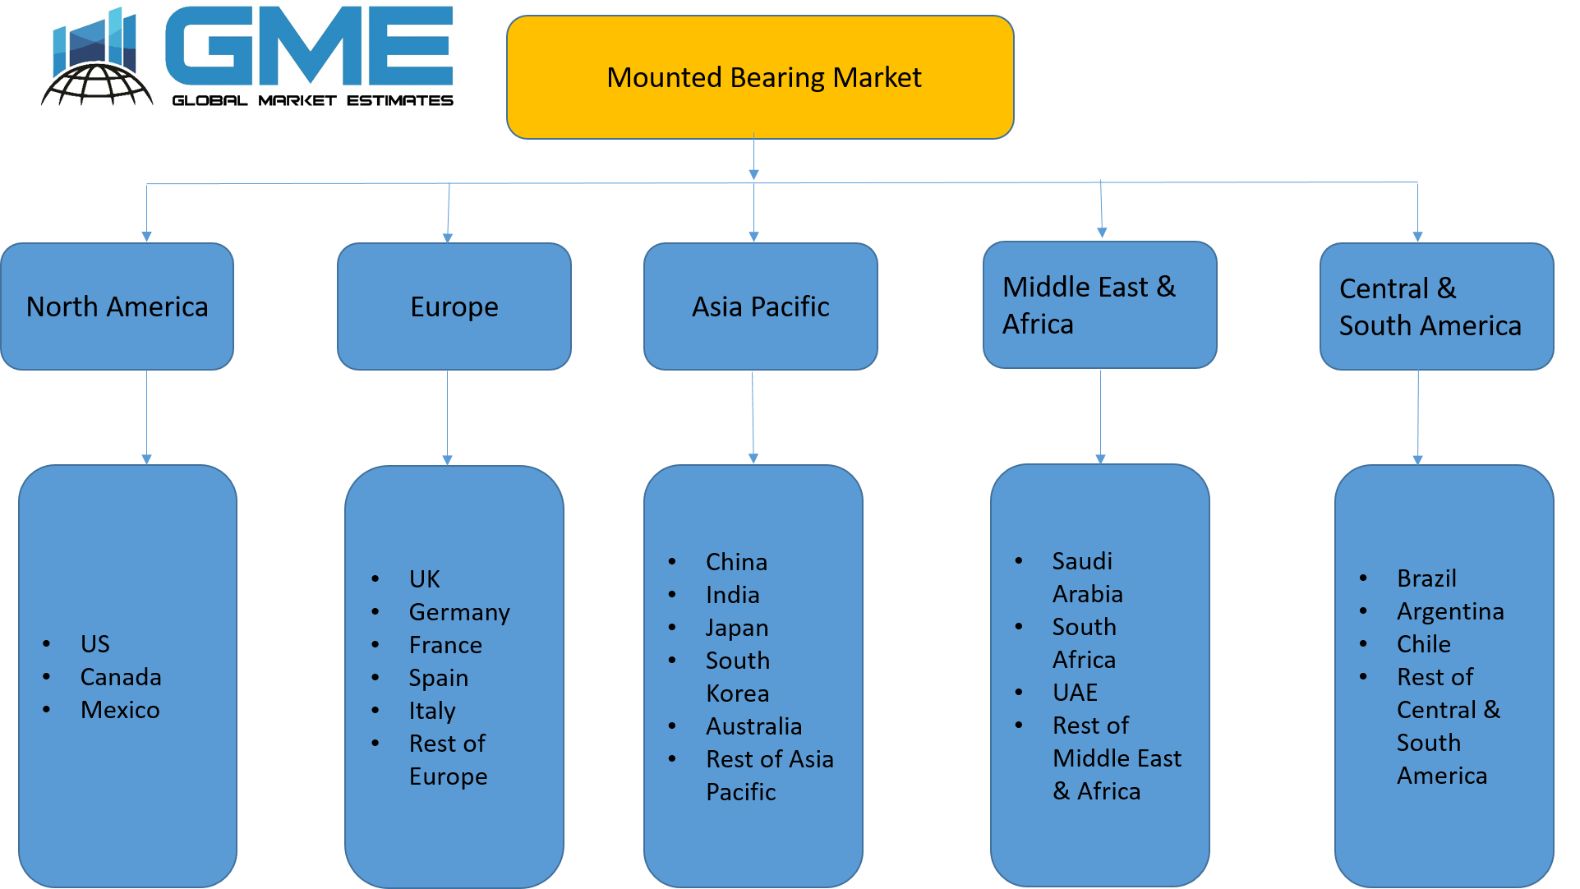 Mounted Bearing Market - Regional Analysis